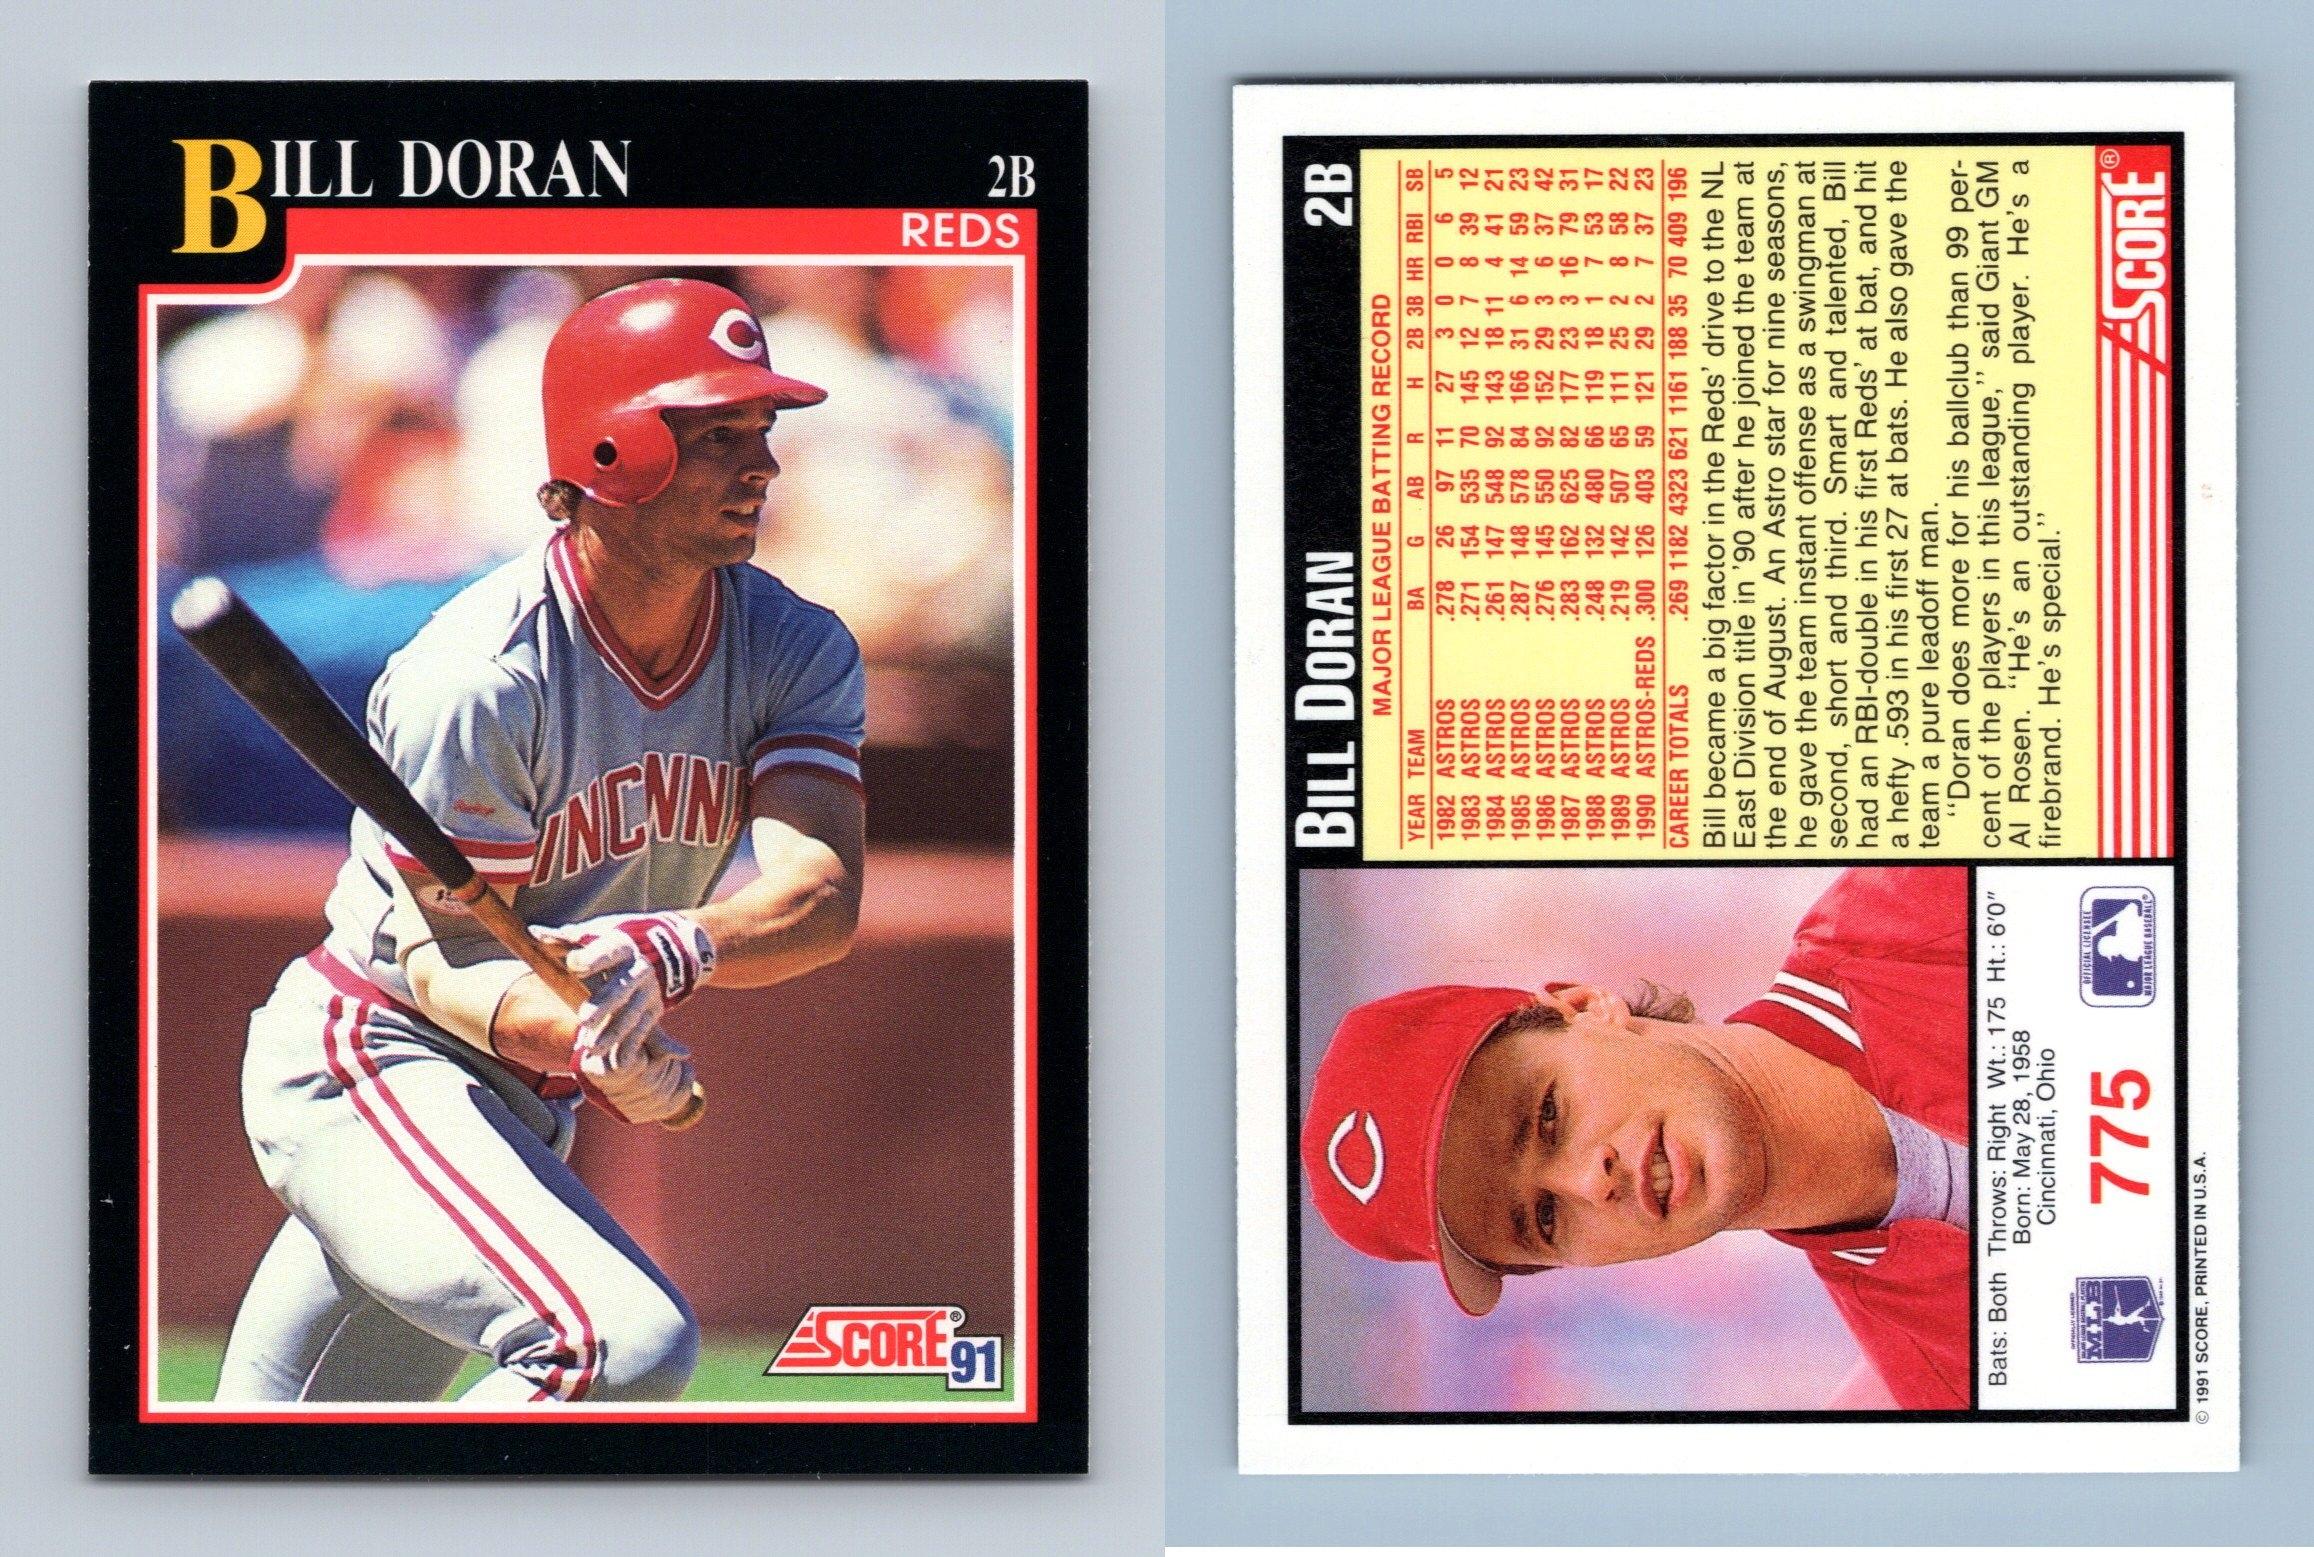 Bill Doran Signed 1989 Upper Deck Baseball Card - Houston Astros